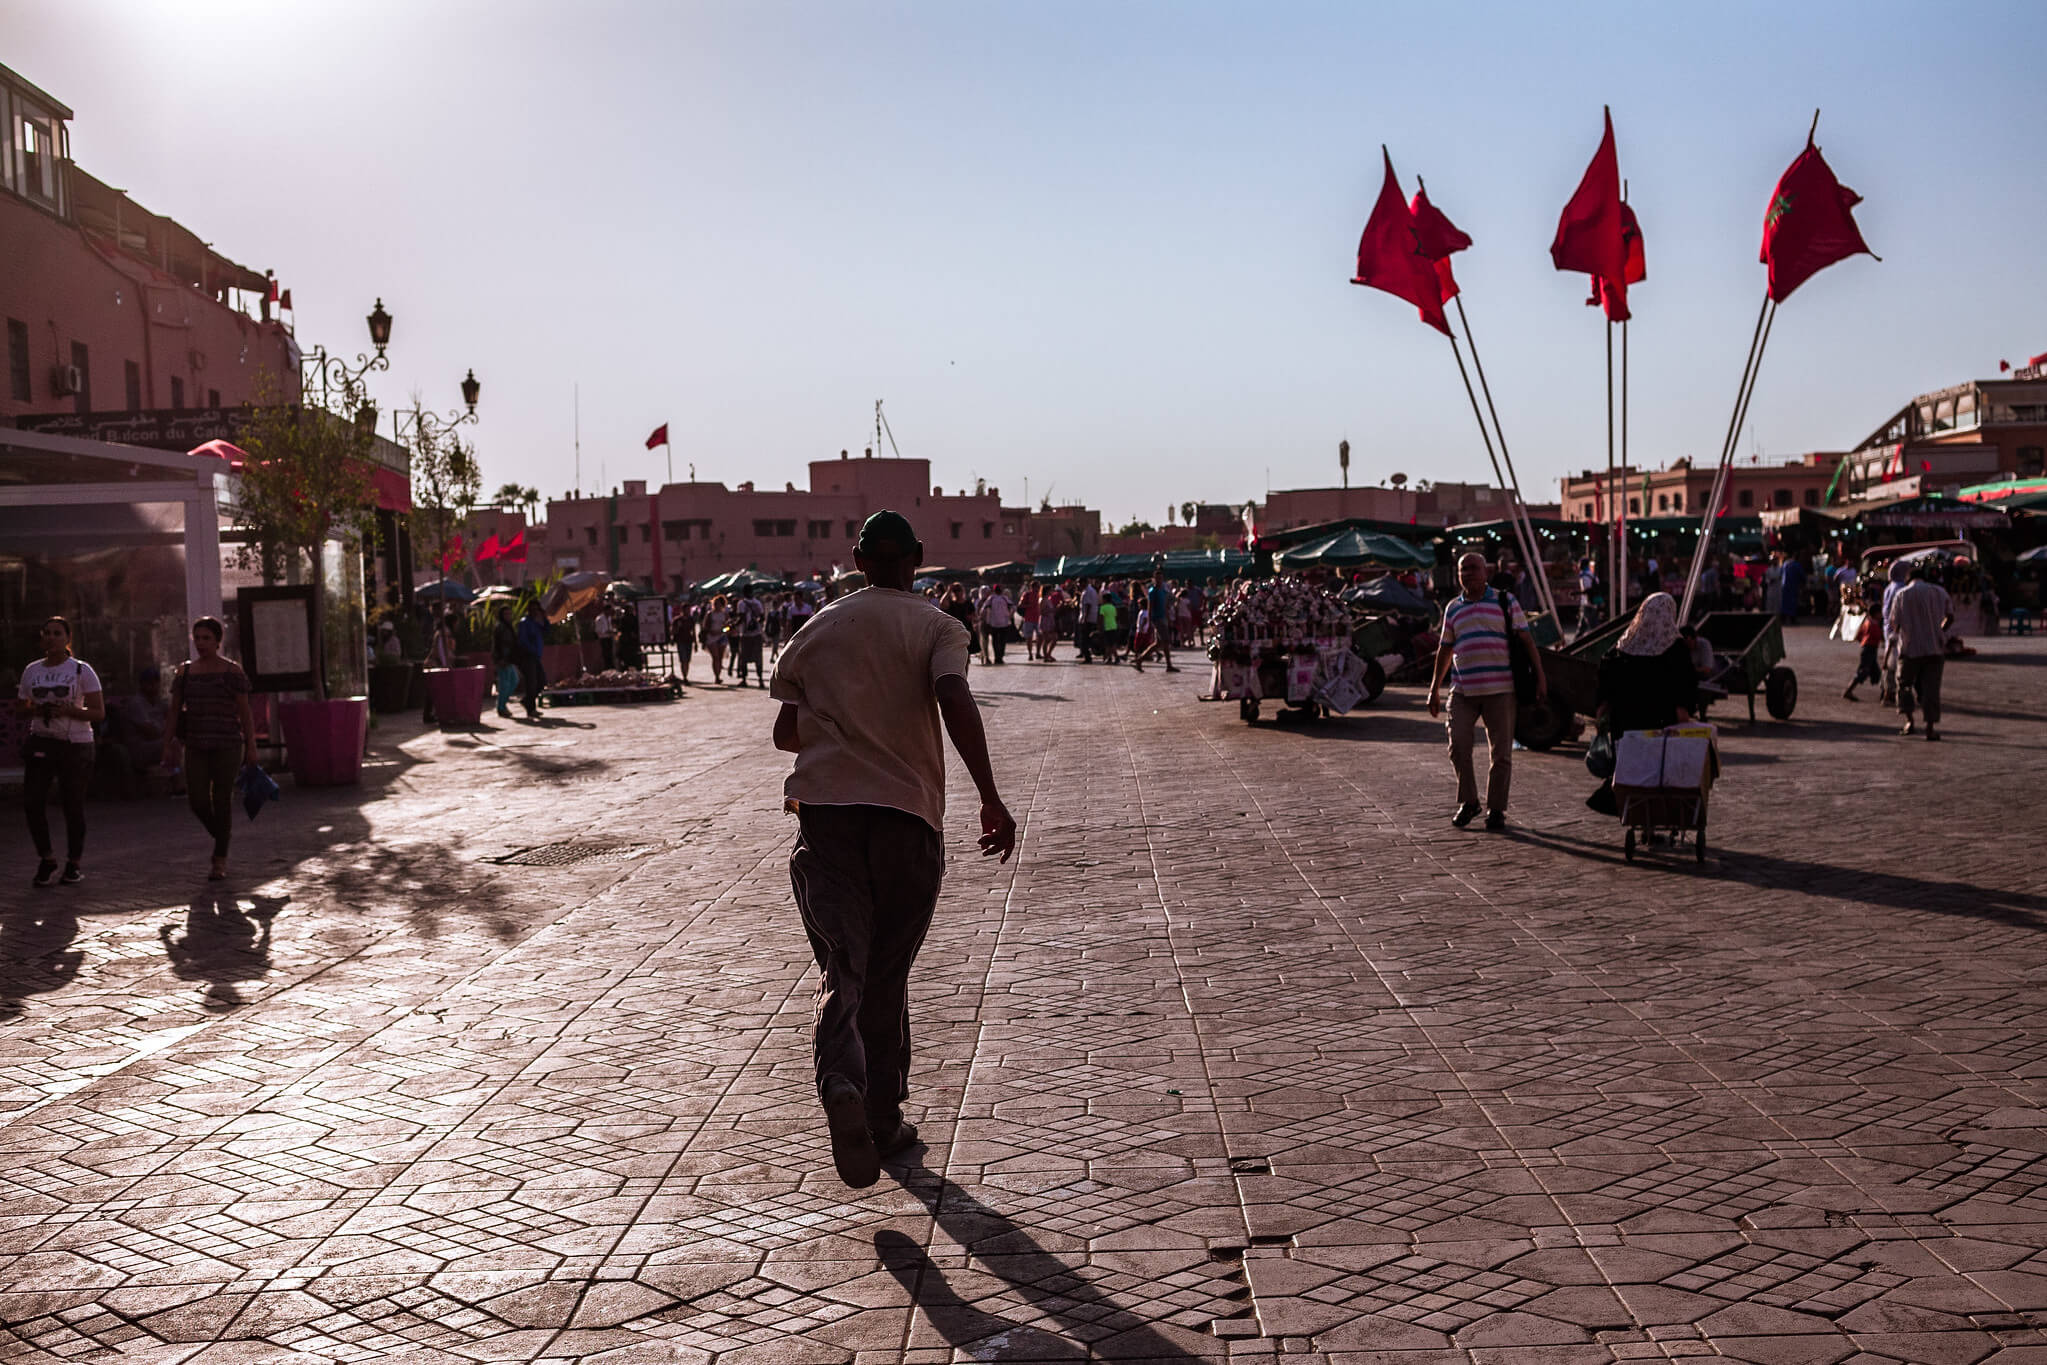 Streefkerk-Medina, Marrakech 2017. ErWin - Flickr